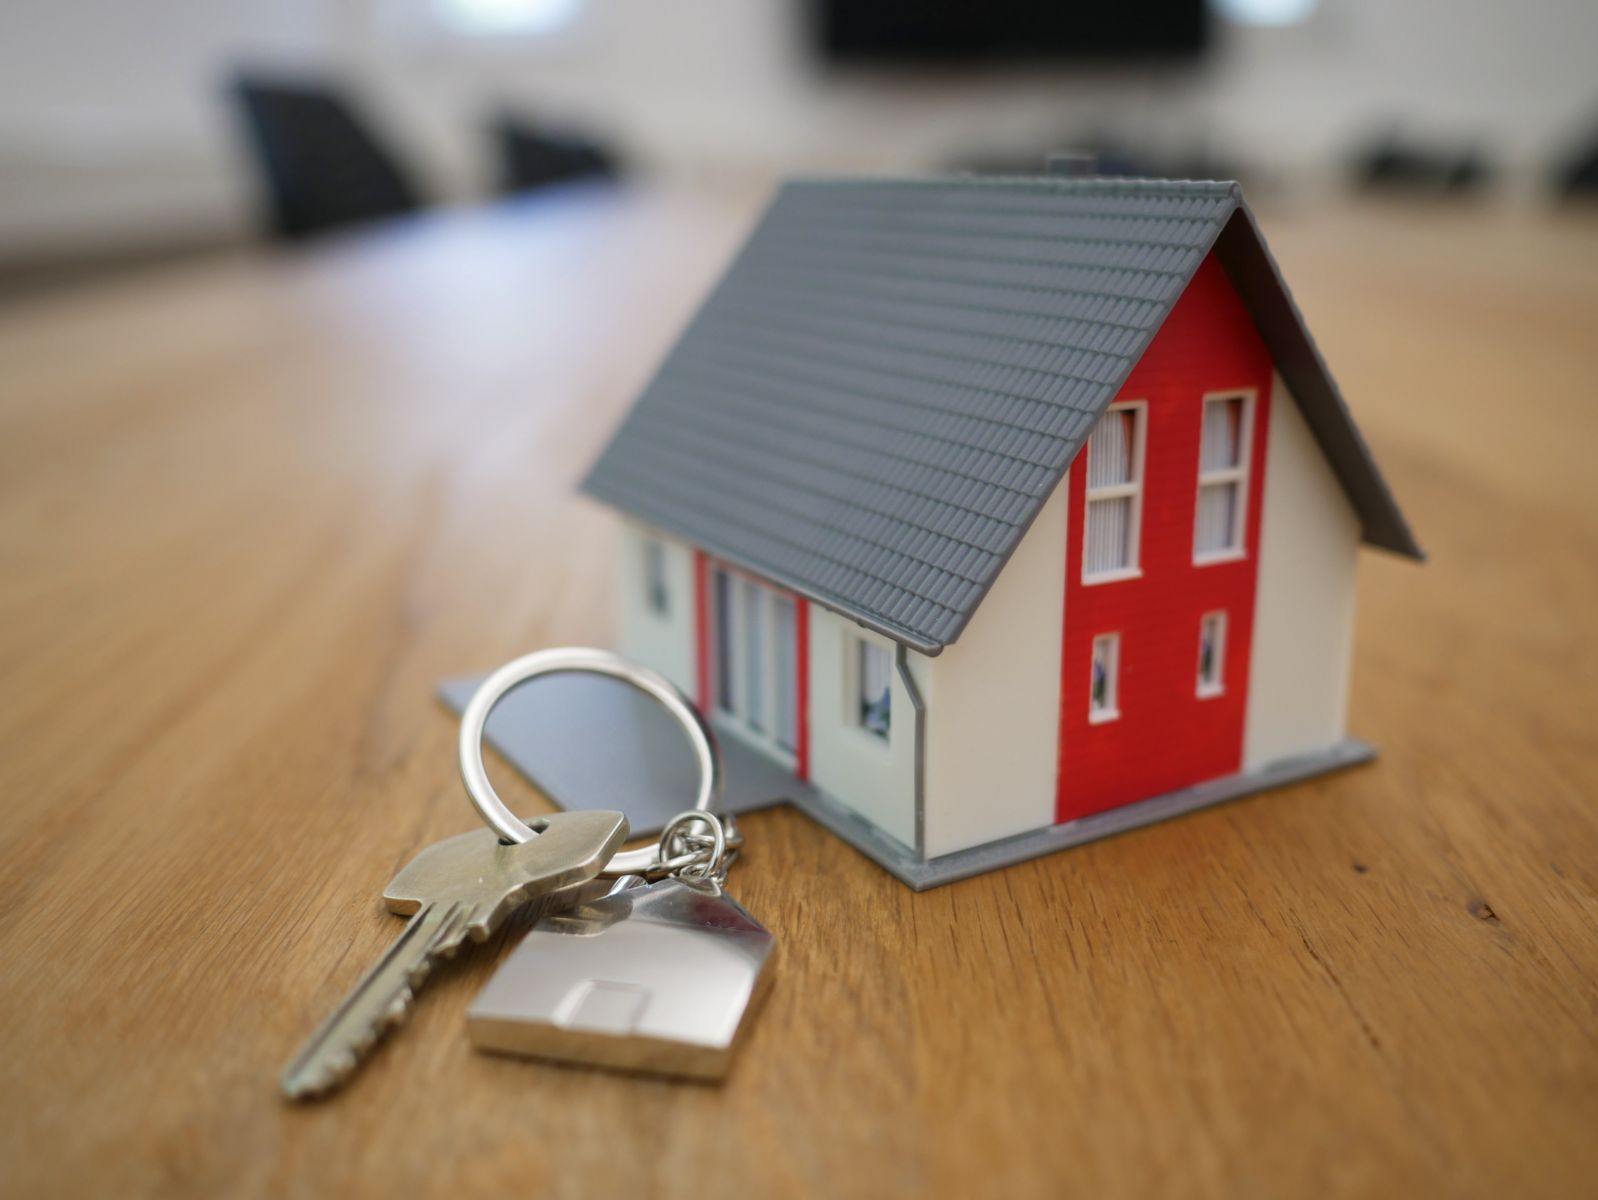 model of house with front door keys 